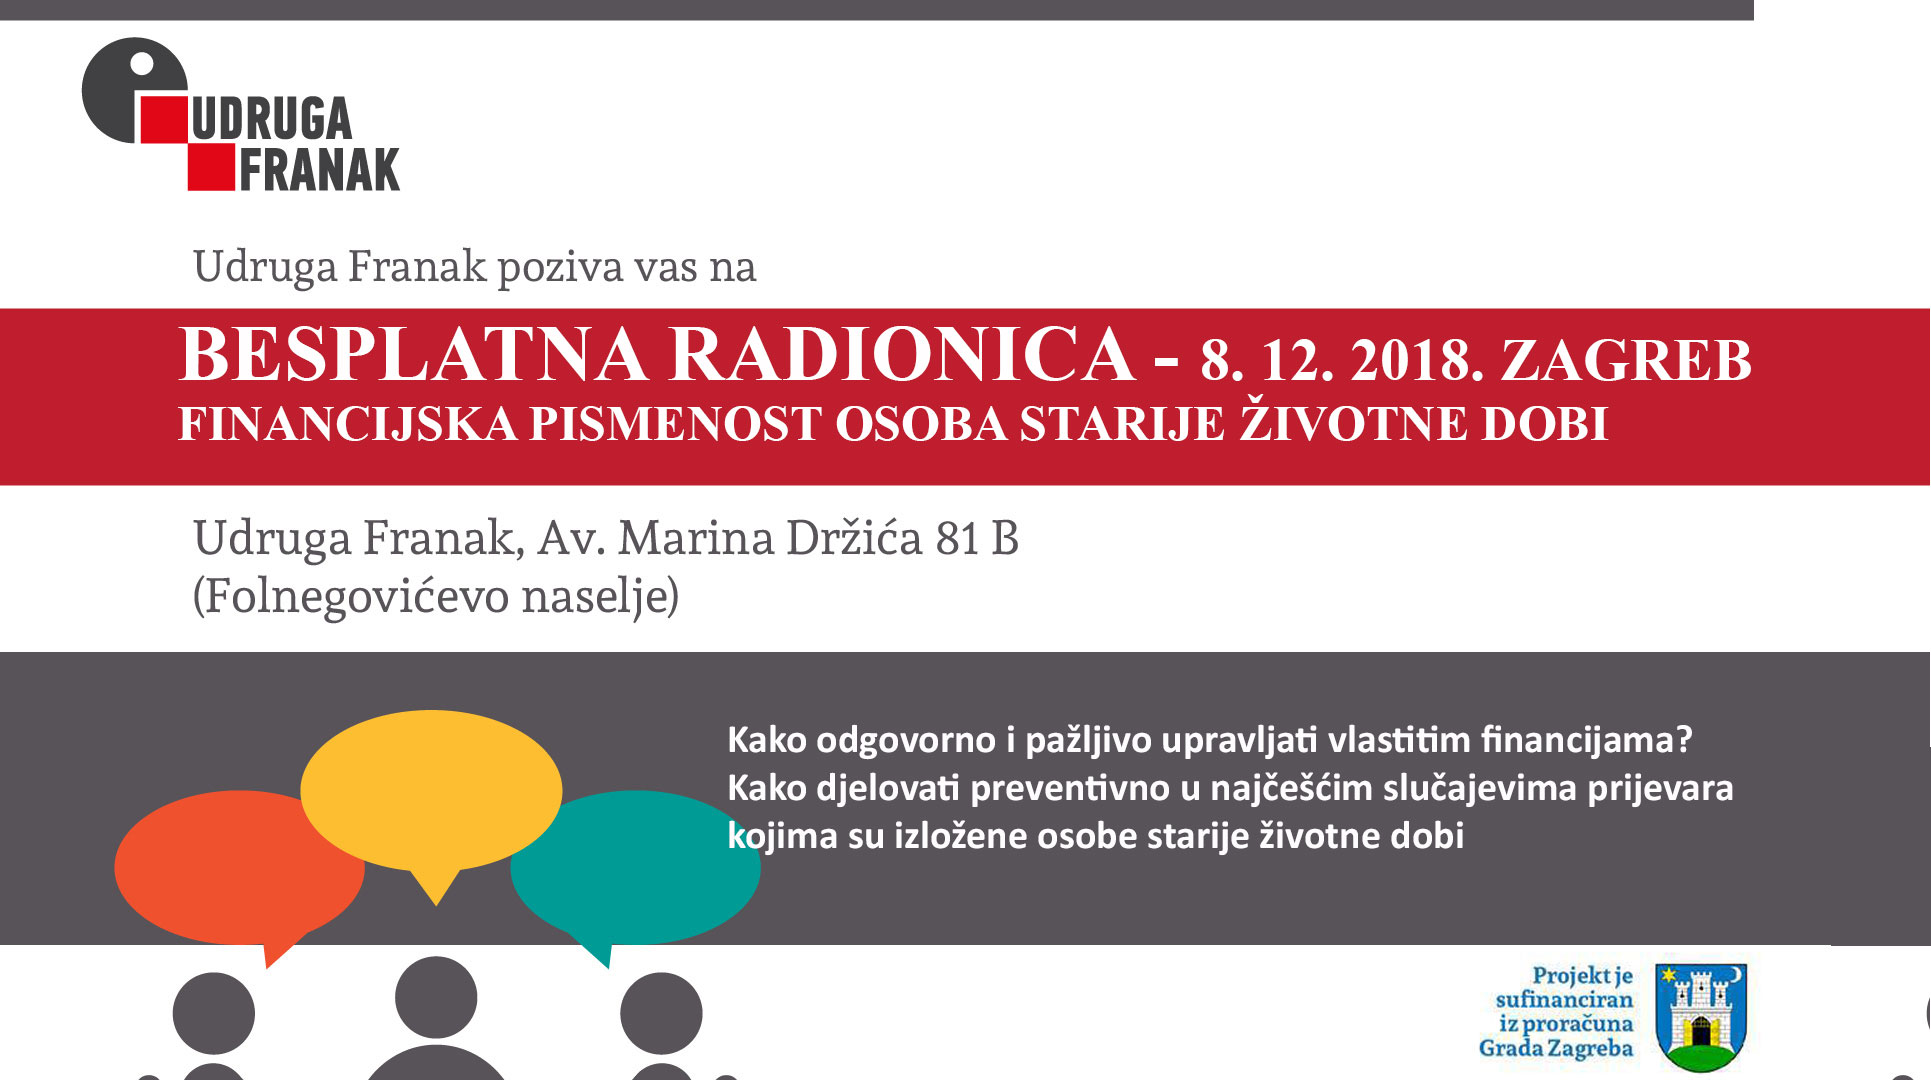 BESPLATNA RADIONICA – FINANCIJSKA PISMENOST OSOBA STARIJE ŽIVOTNE DOBI – 8. 12. 2018. ZAGREB